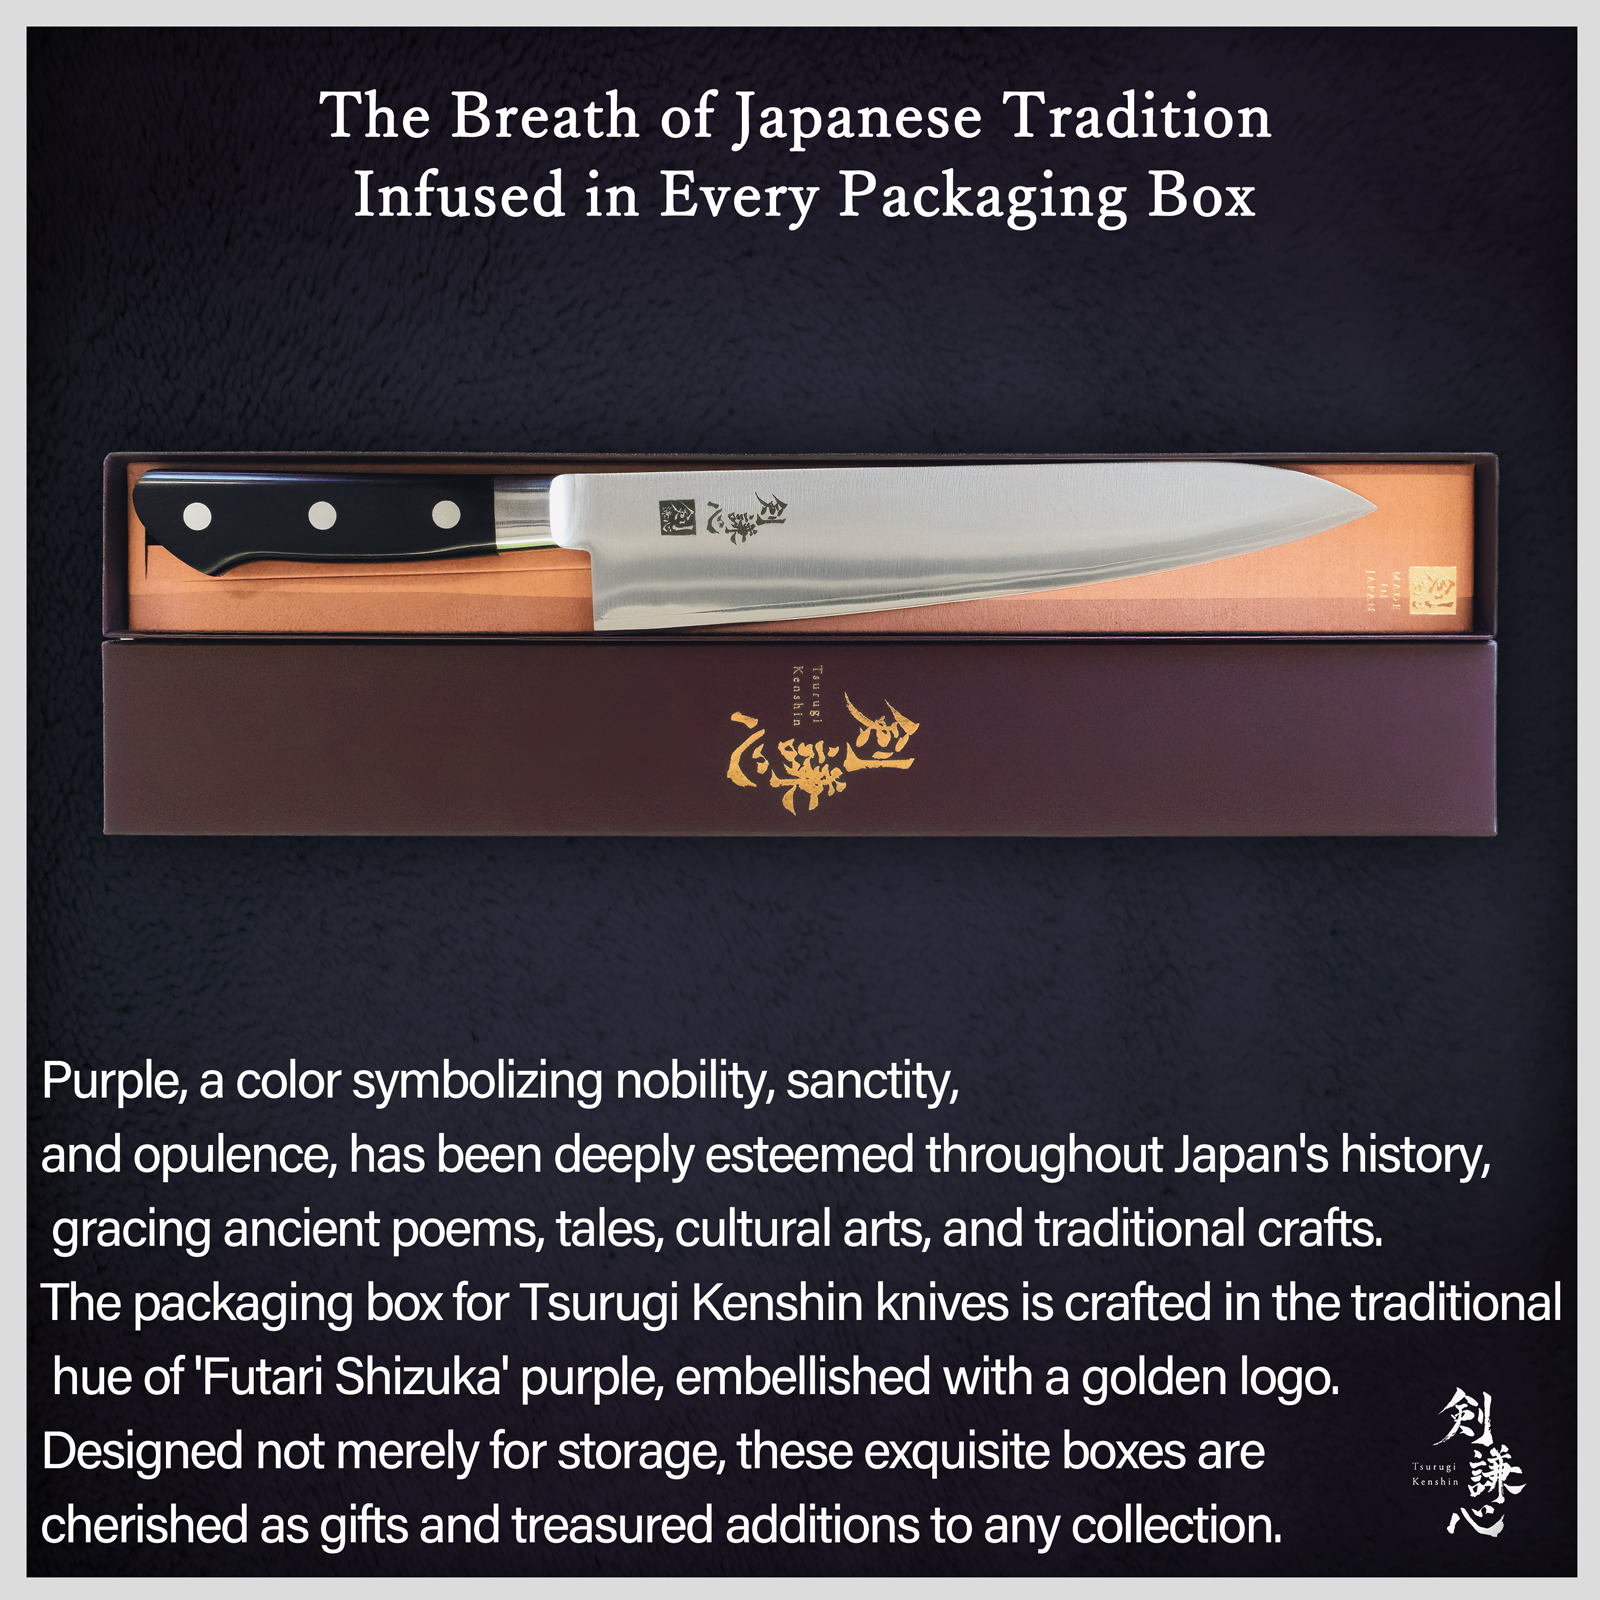 Tsurugi Kenshin DP Gyuto Knife with Bolster 240mm VG10 Steel